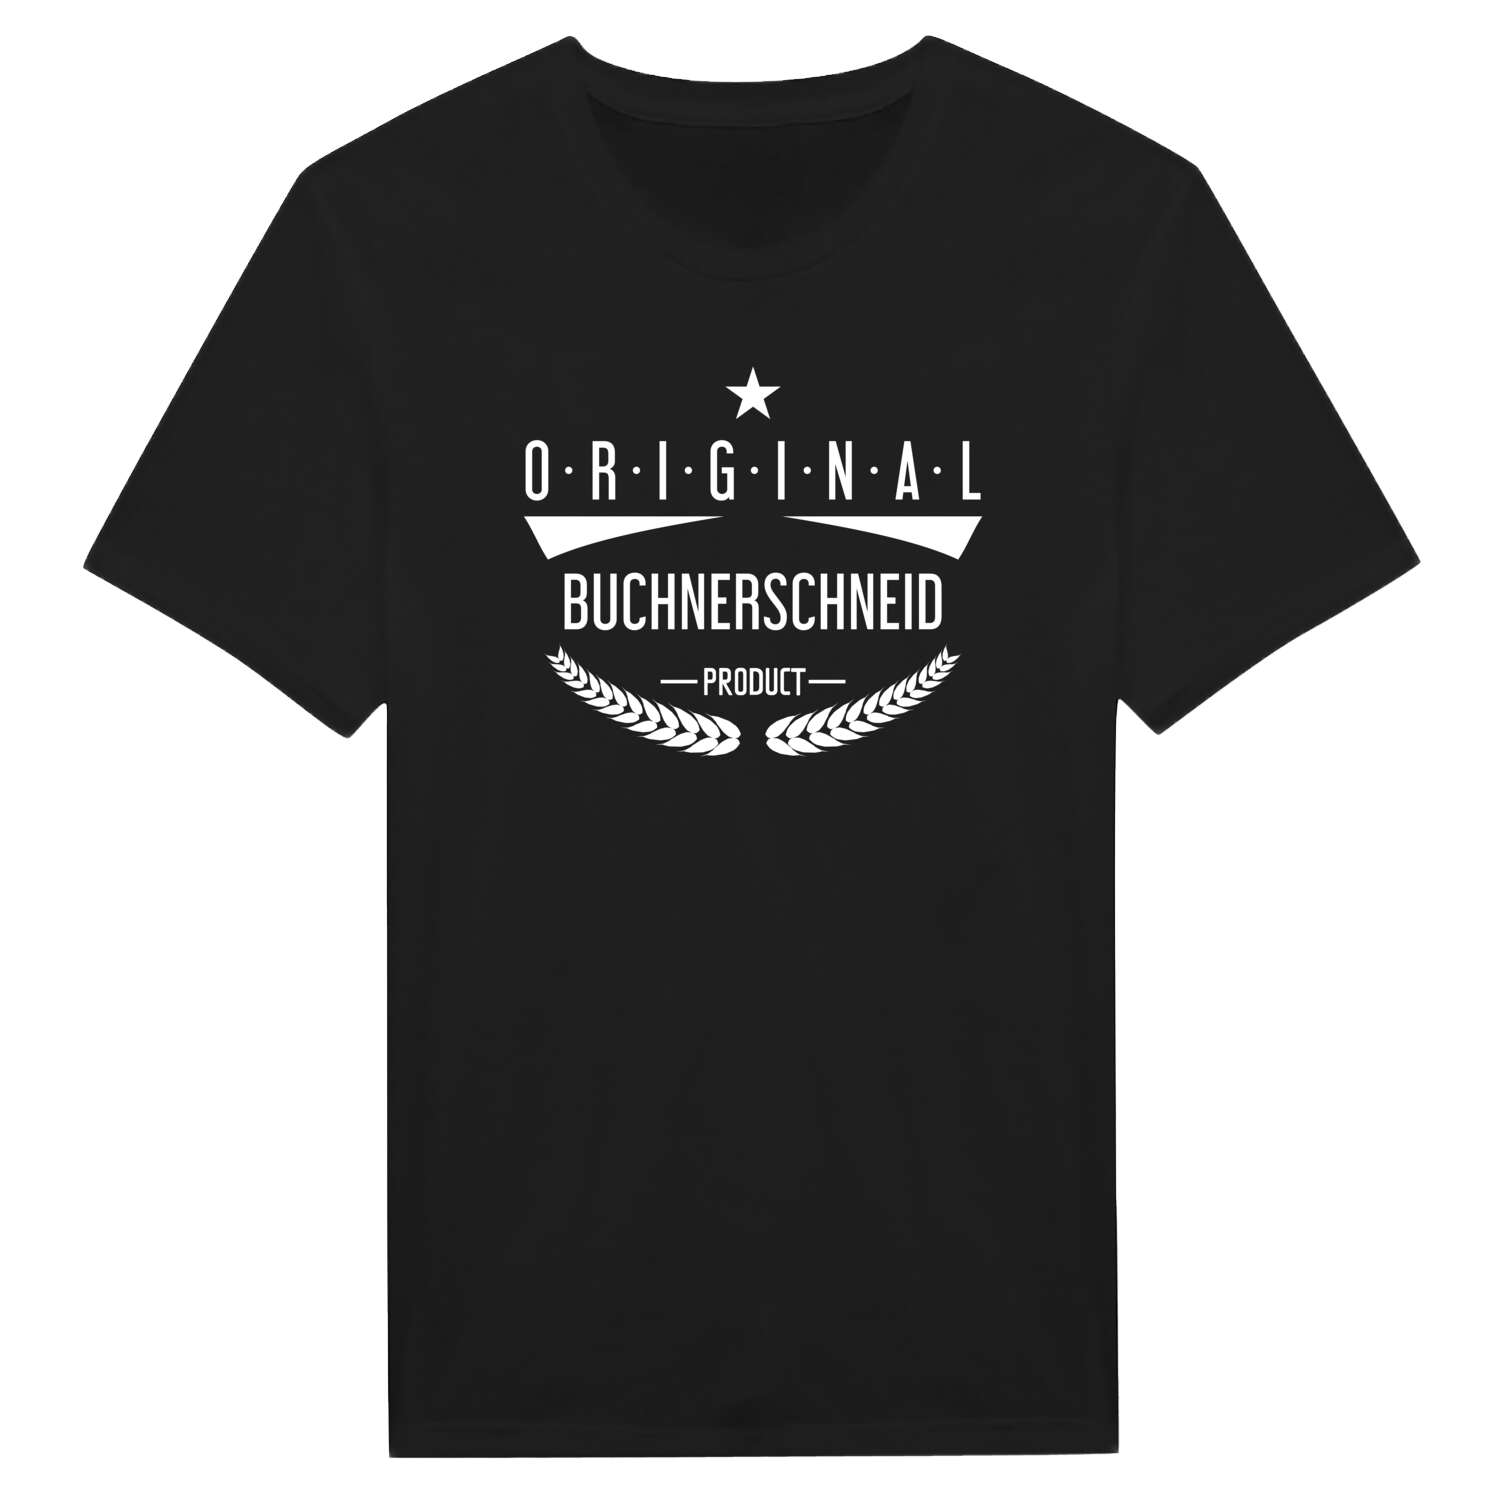 Buchnerschneid T-Shirt »Original Product«